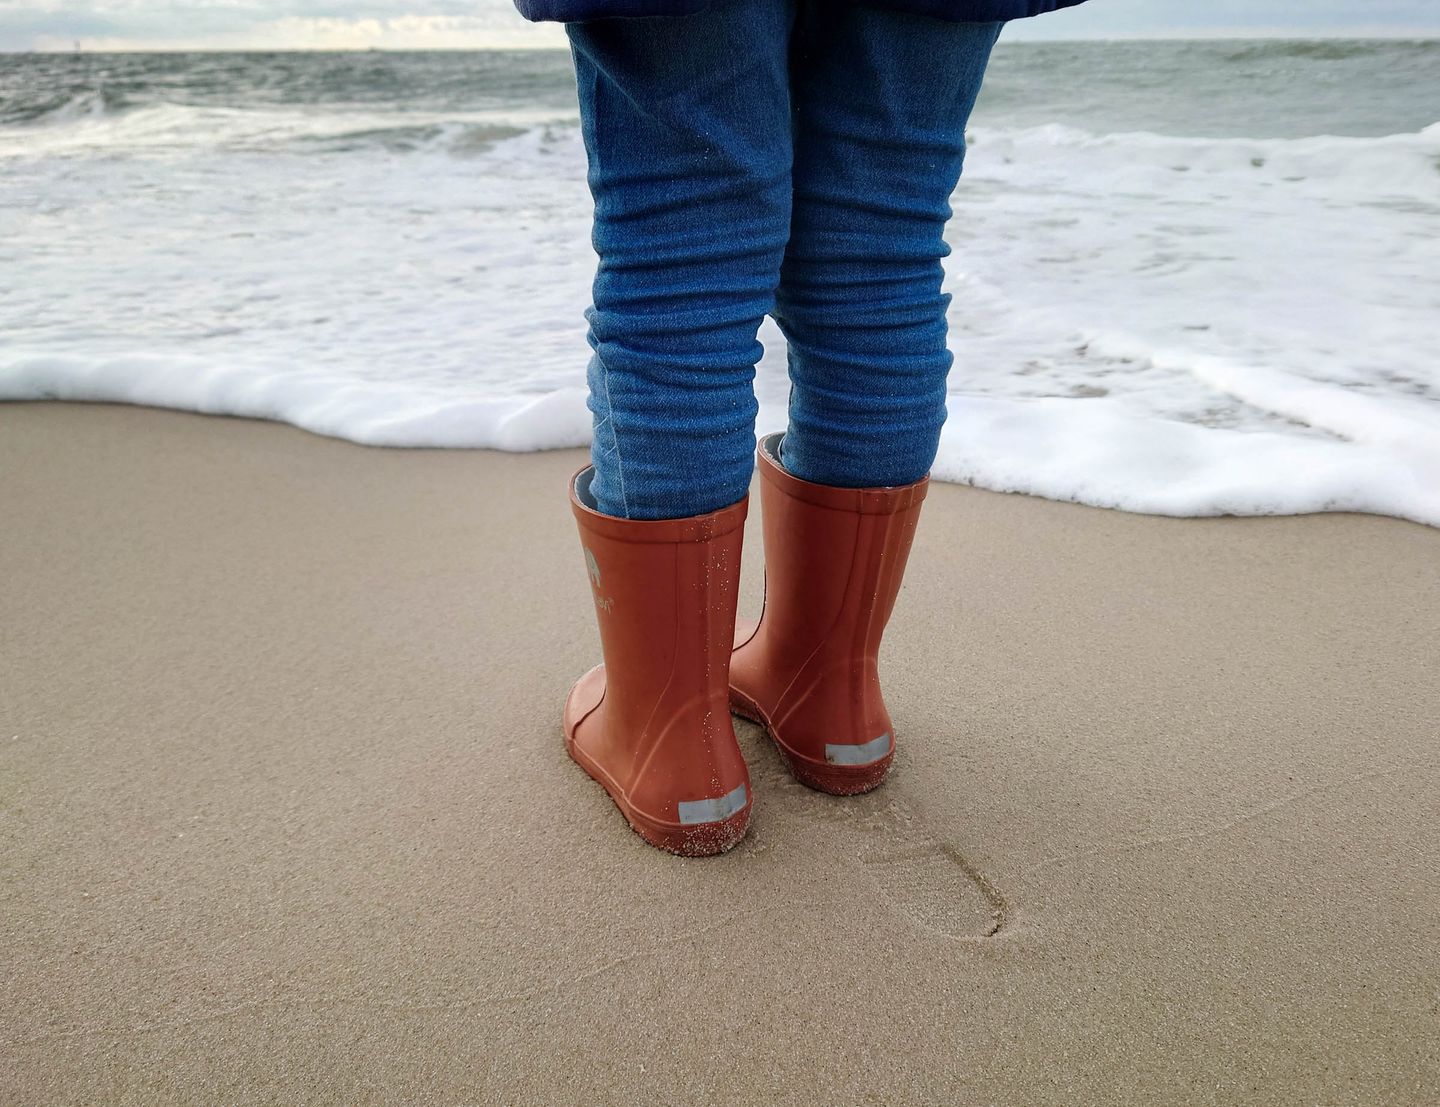 Gummistiefel sind die idealen Begleiter bei einen Strandspaziergang mit Wind und Regen